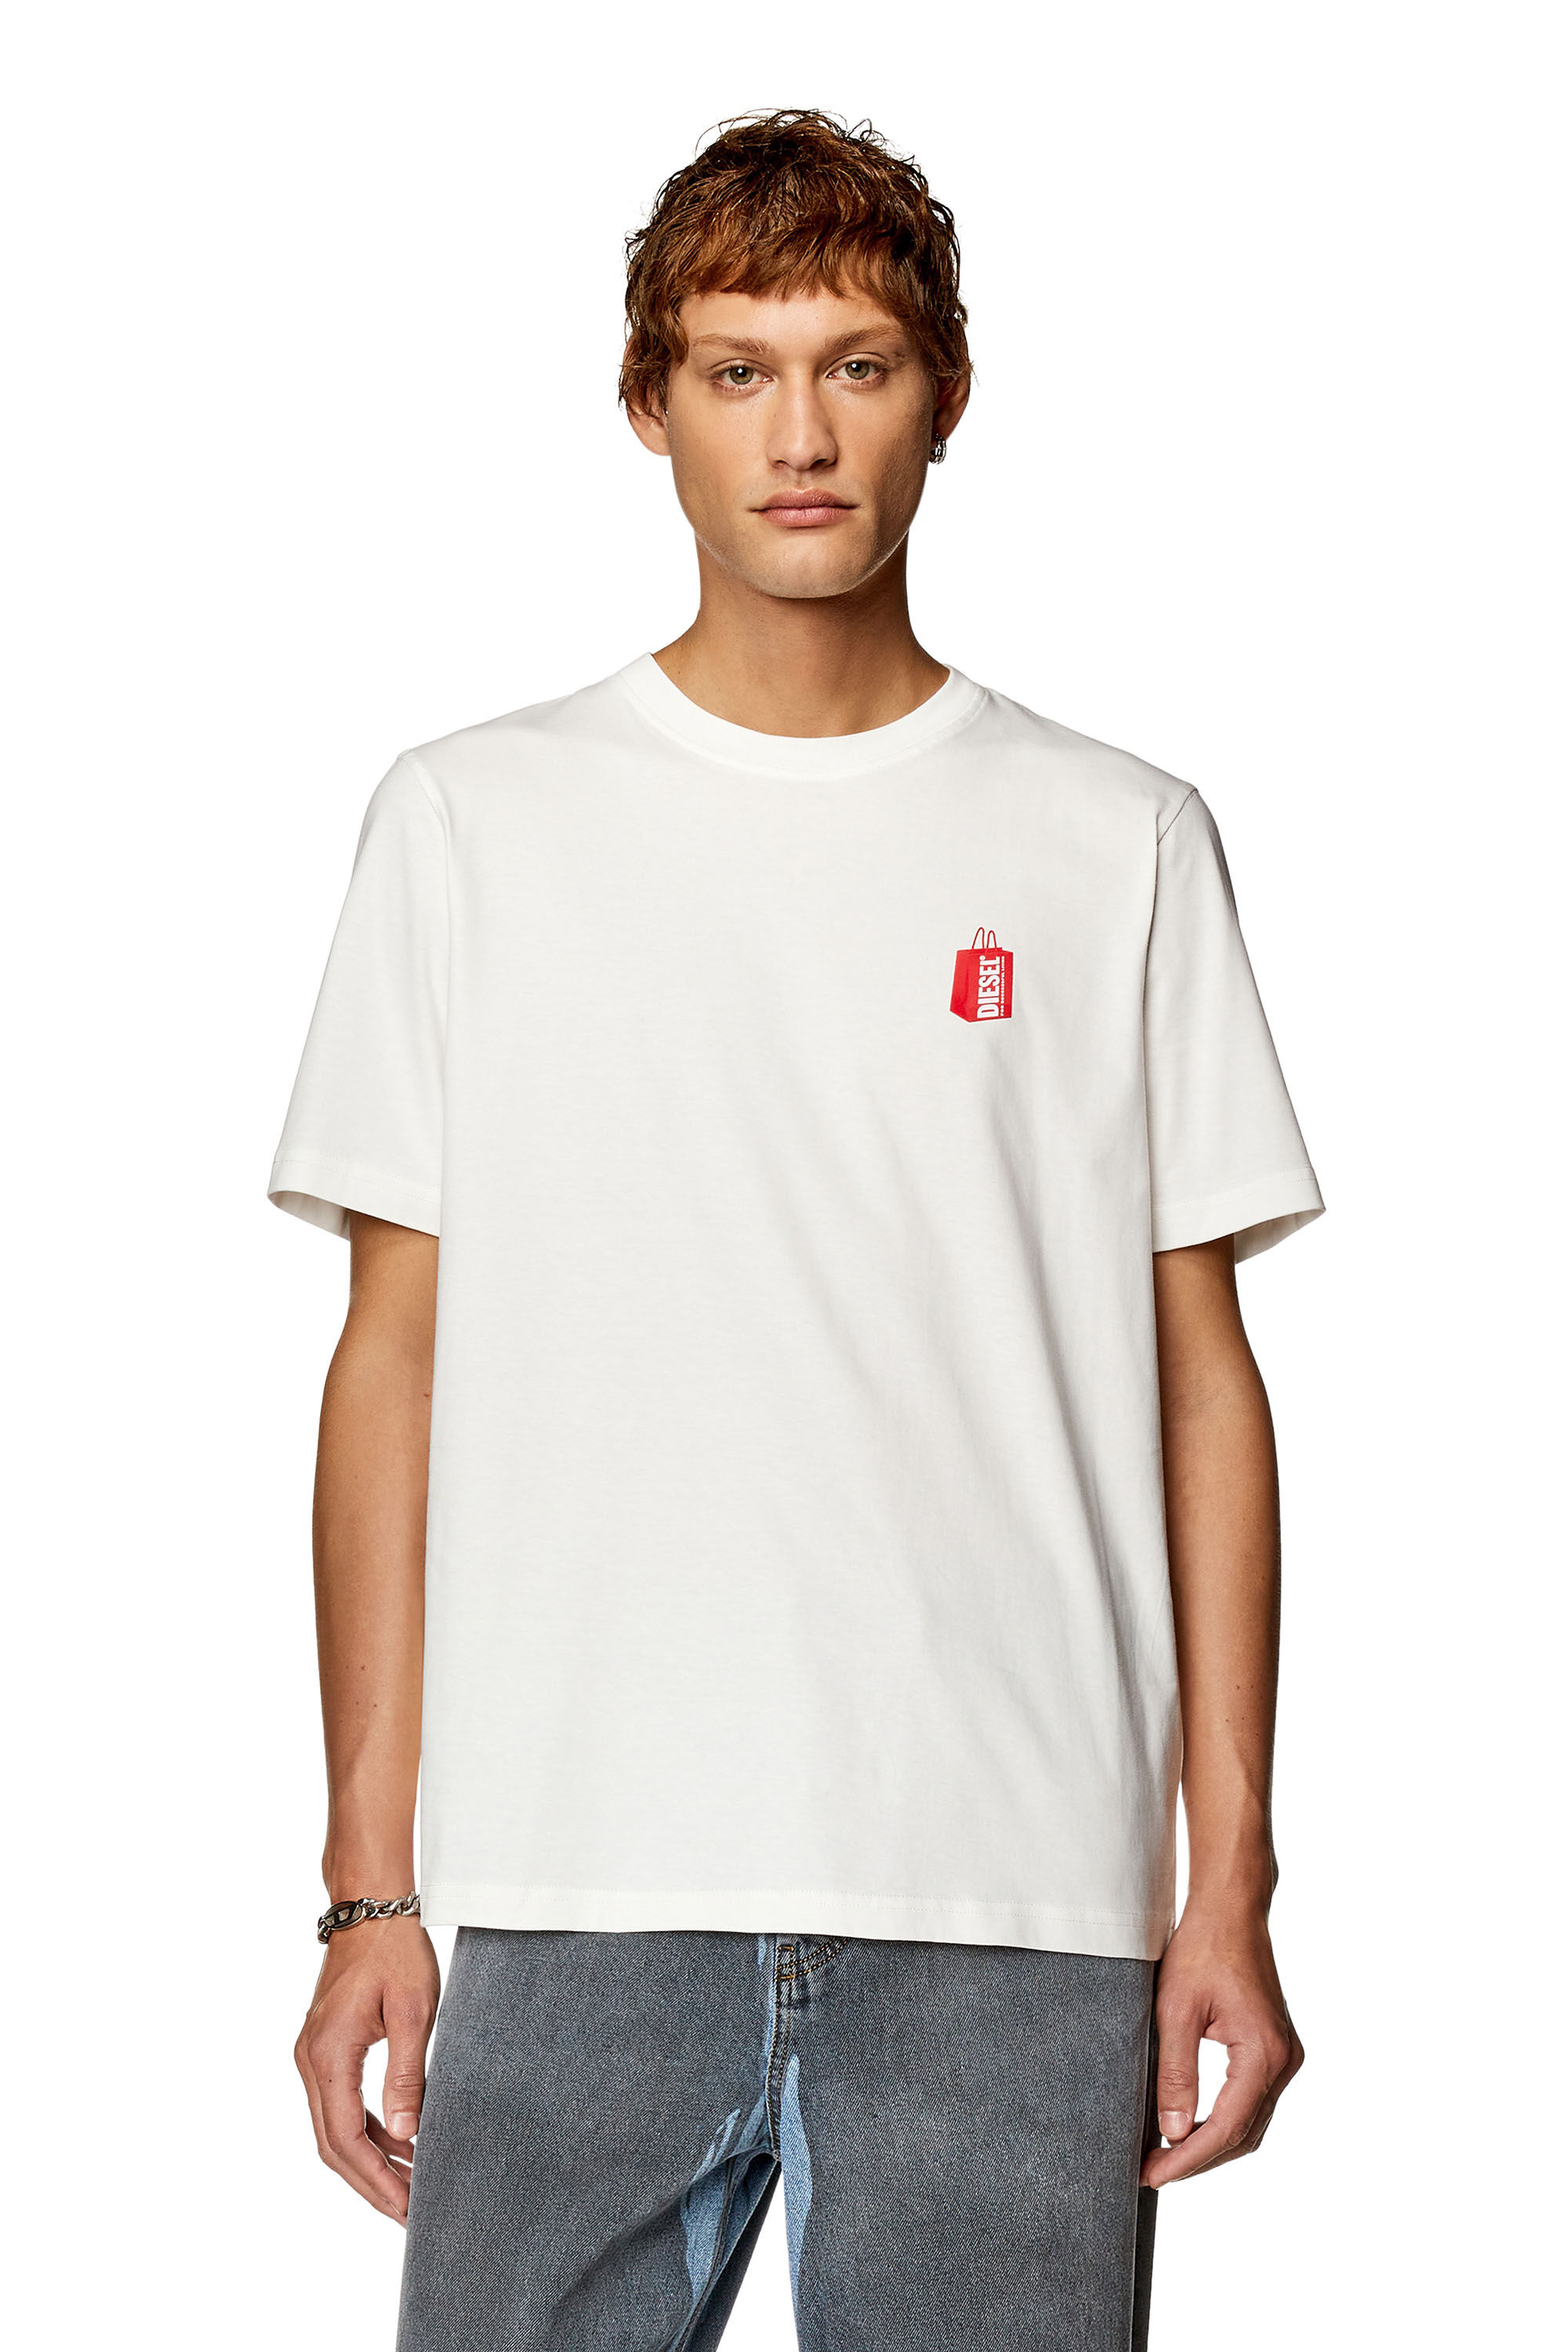 Diesel - T-JUST-N18, Man T-shirt with Diesel bag print in White - Image 3